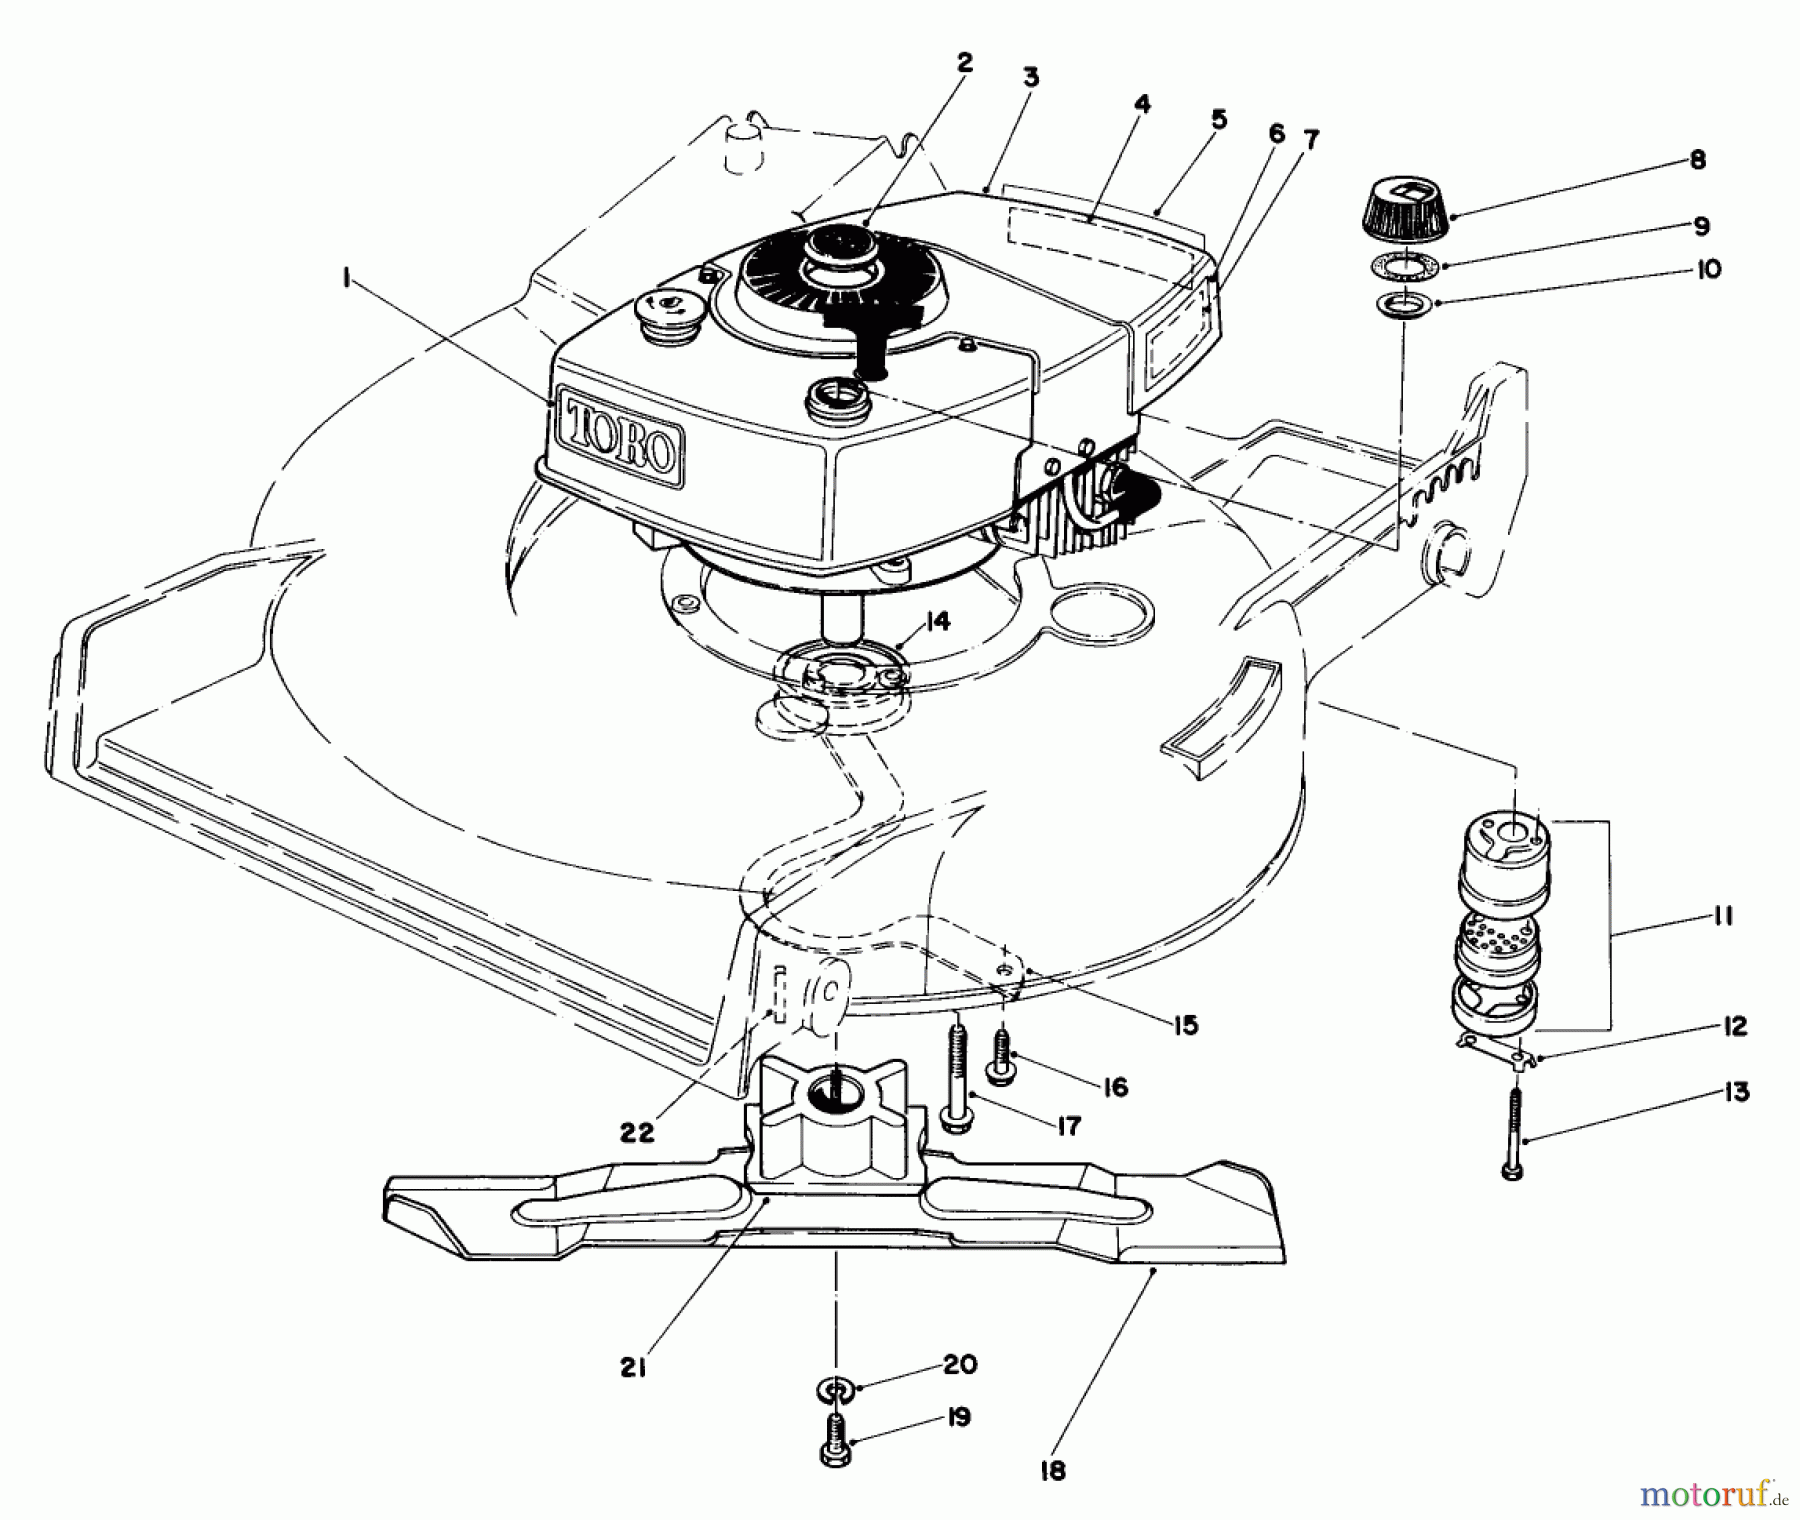  Toro Neu Mowers, Walk-Behind Seite 1 20705 - Toro Lawnmower, 1985 (5000001-5999999) ENGINE ASSEMBLY